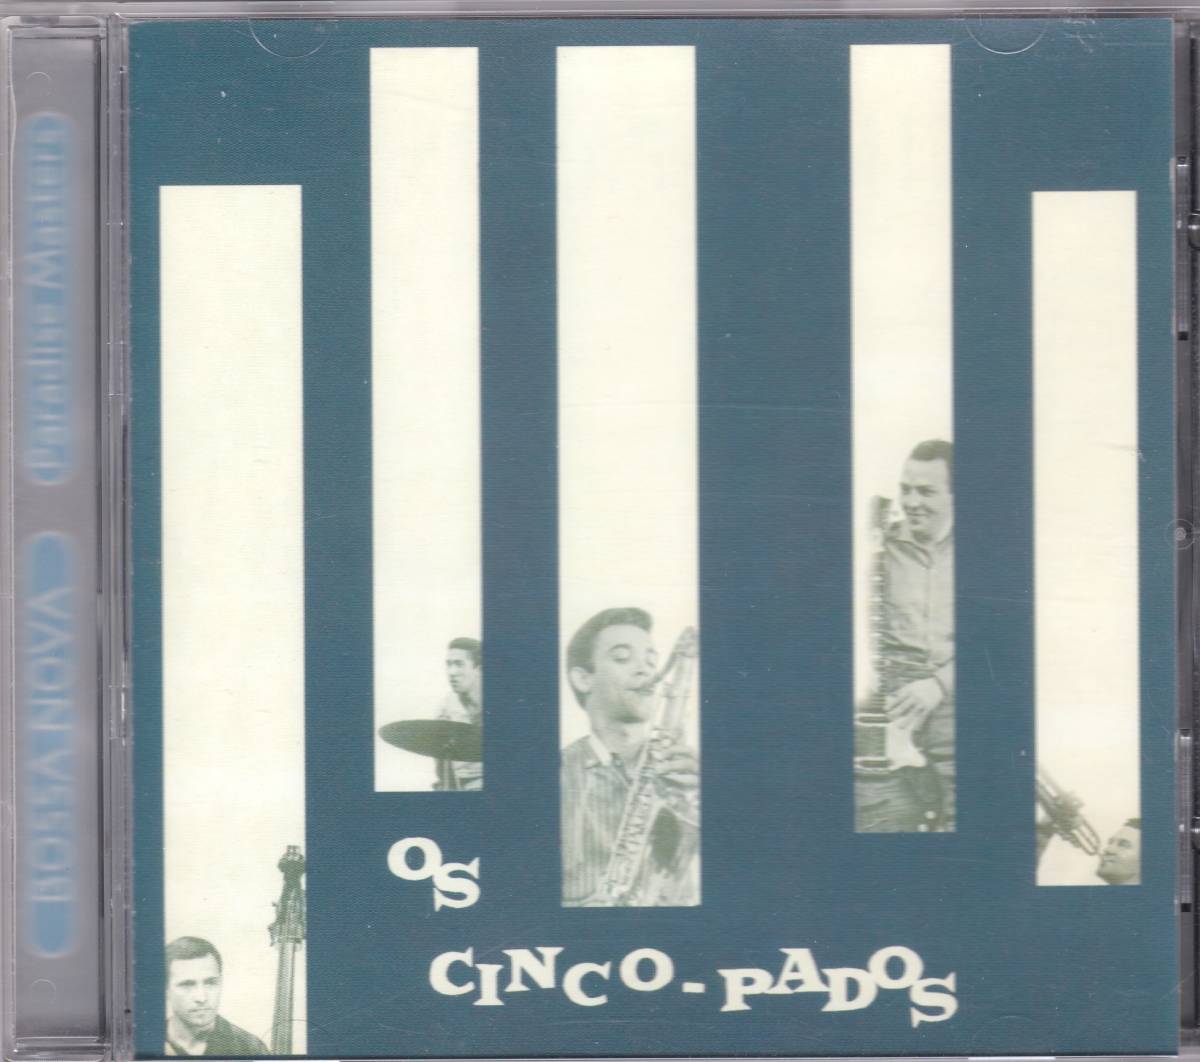 *OS CINCO-PADOS( мужской *sinko*pados)*64 год Release. [Milsestone]. kava-. отличный Jazz *bosa. большой название запись * первый CD.& снят с производства редкость 